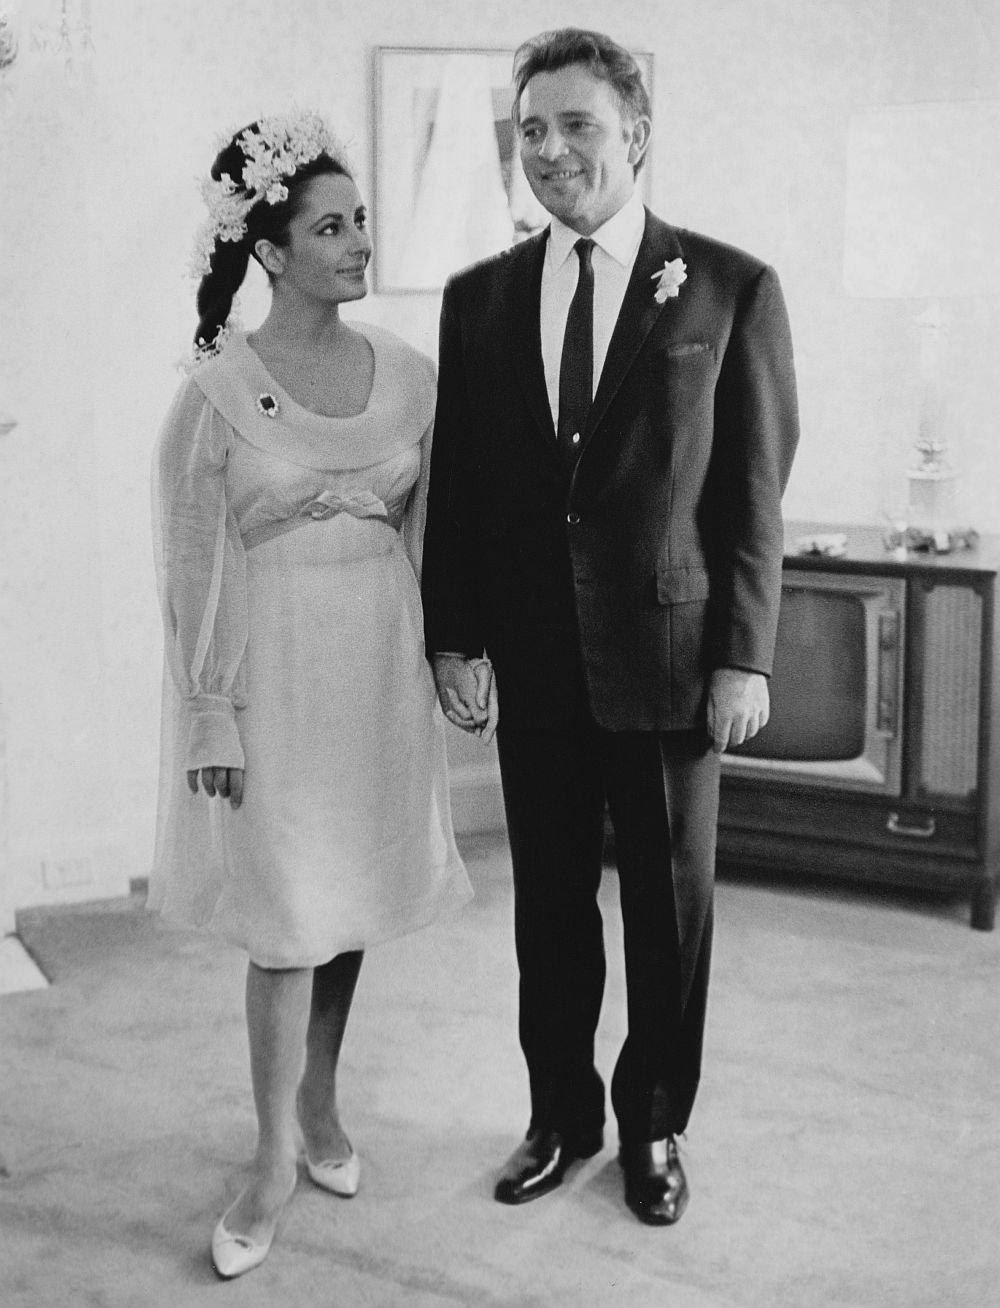 Актьорите Елизабет Тейлър и Ричард Бъртън минават под венчило през 1964 година. Двамата се развеждат десет години по-късно - през 1974 година. На следващата година те отново сключват брак, но се развеждат през 1976 година. На снимката: Елизабет Тейлър и Ричард Бъртън на сватбата им през 1964 година.